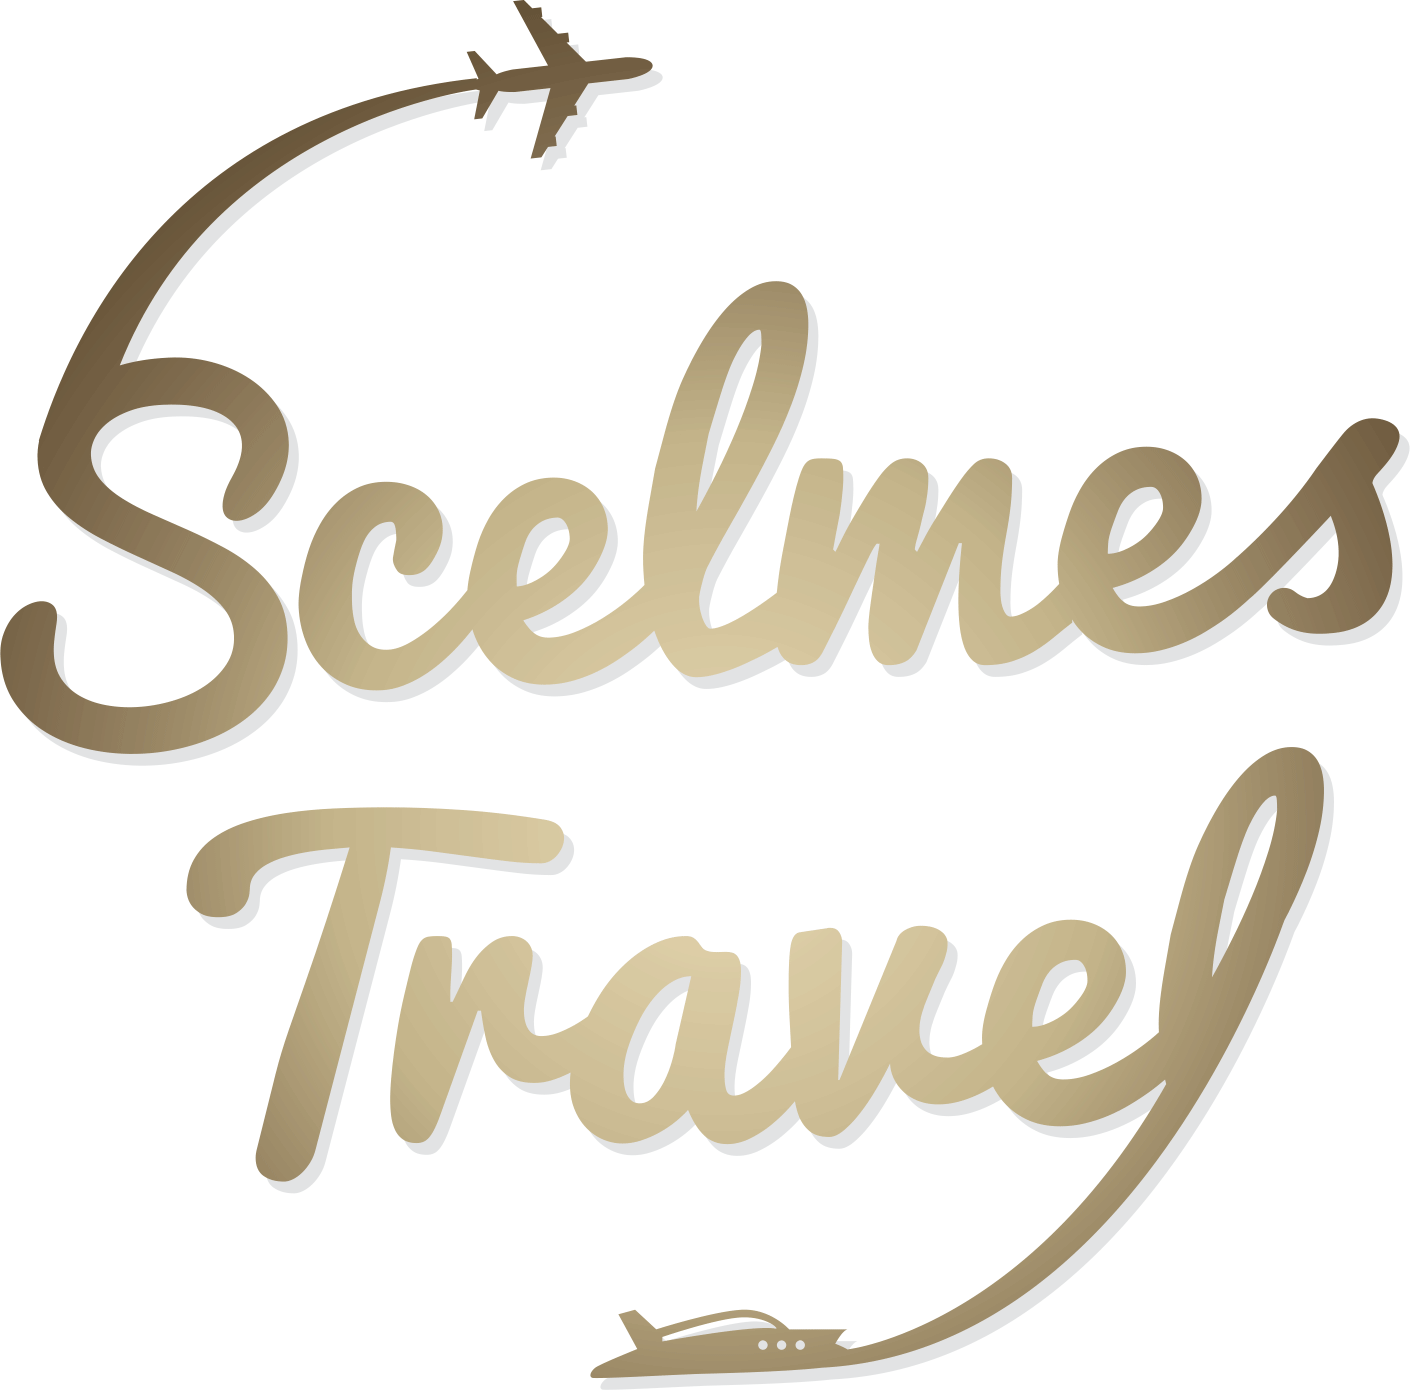 Scelmes Travel